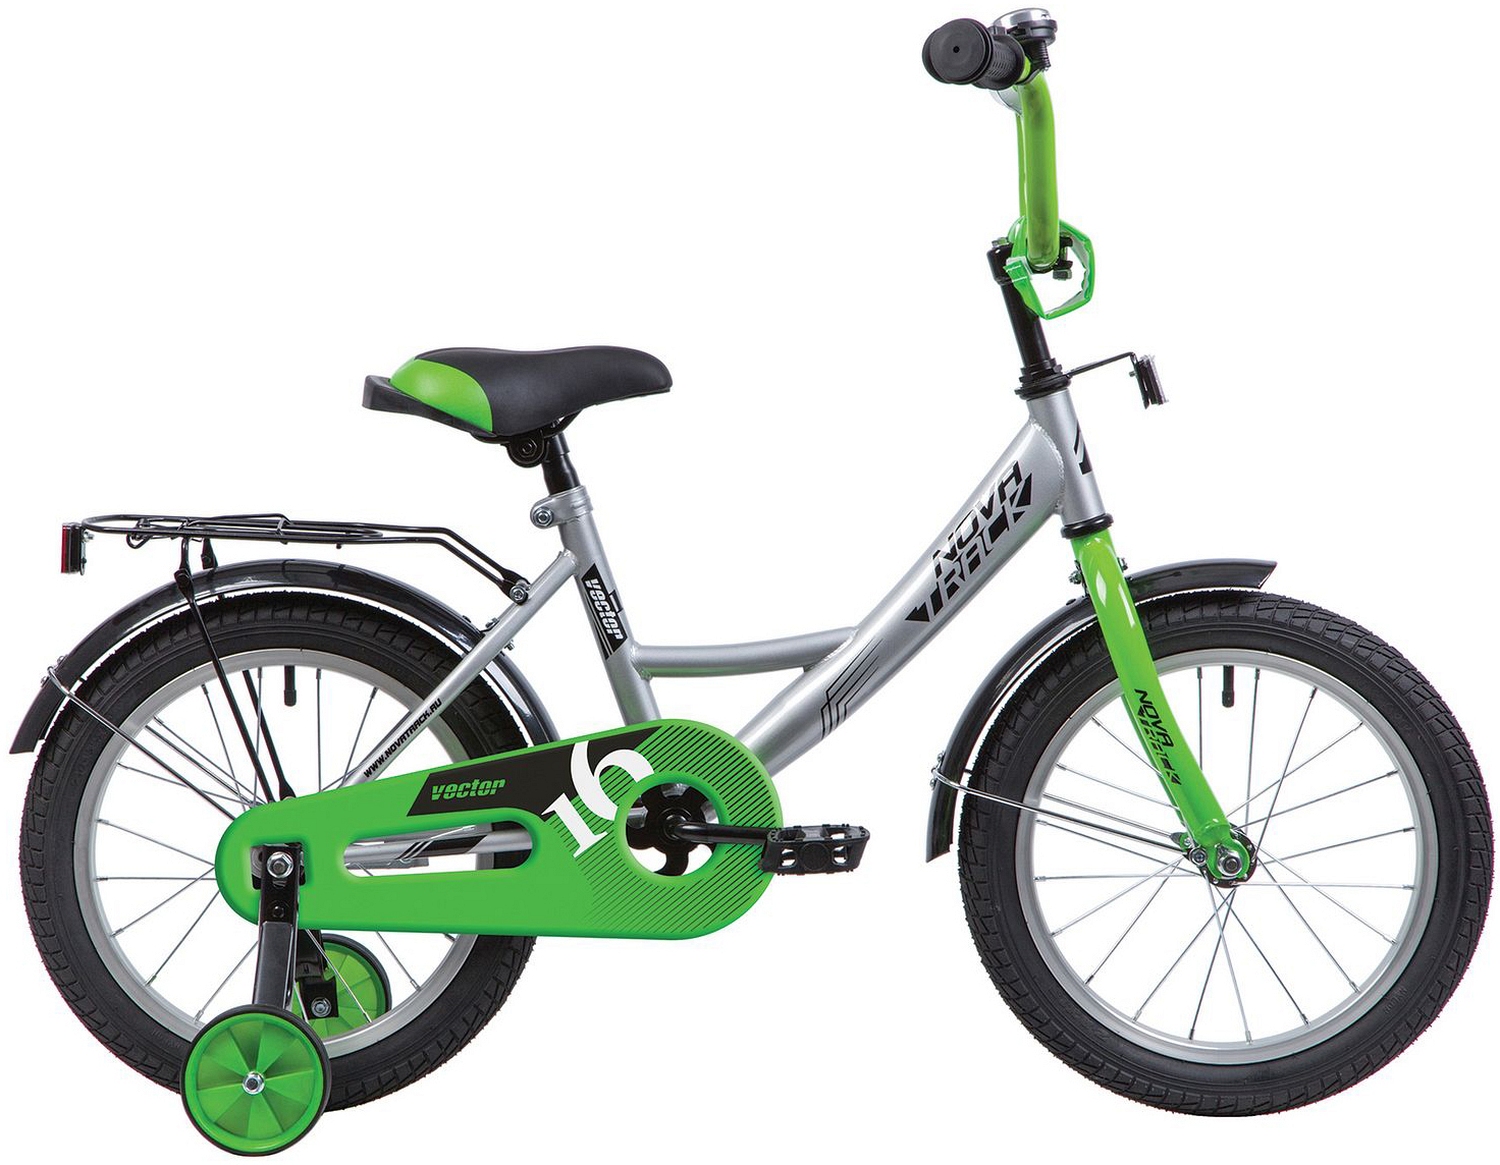  Отзывы о Детском велосипеде Novatrack Vector 12 2020